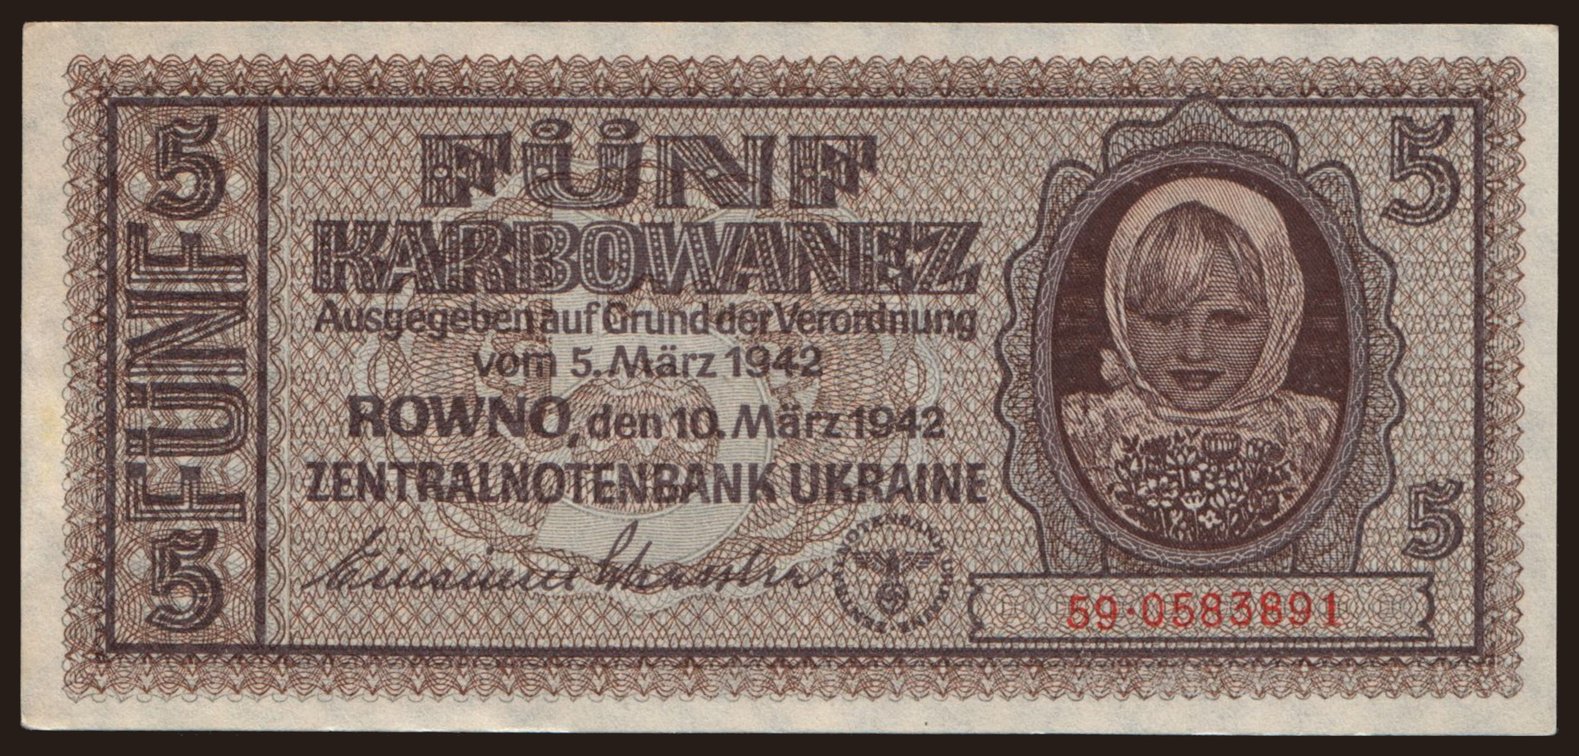 Rowno, 5 Karbowanez, 1942